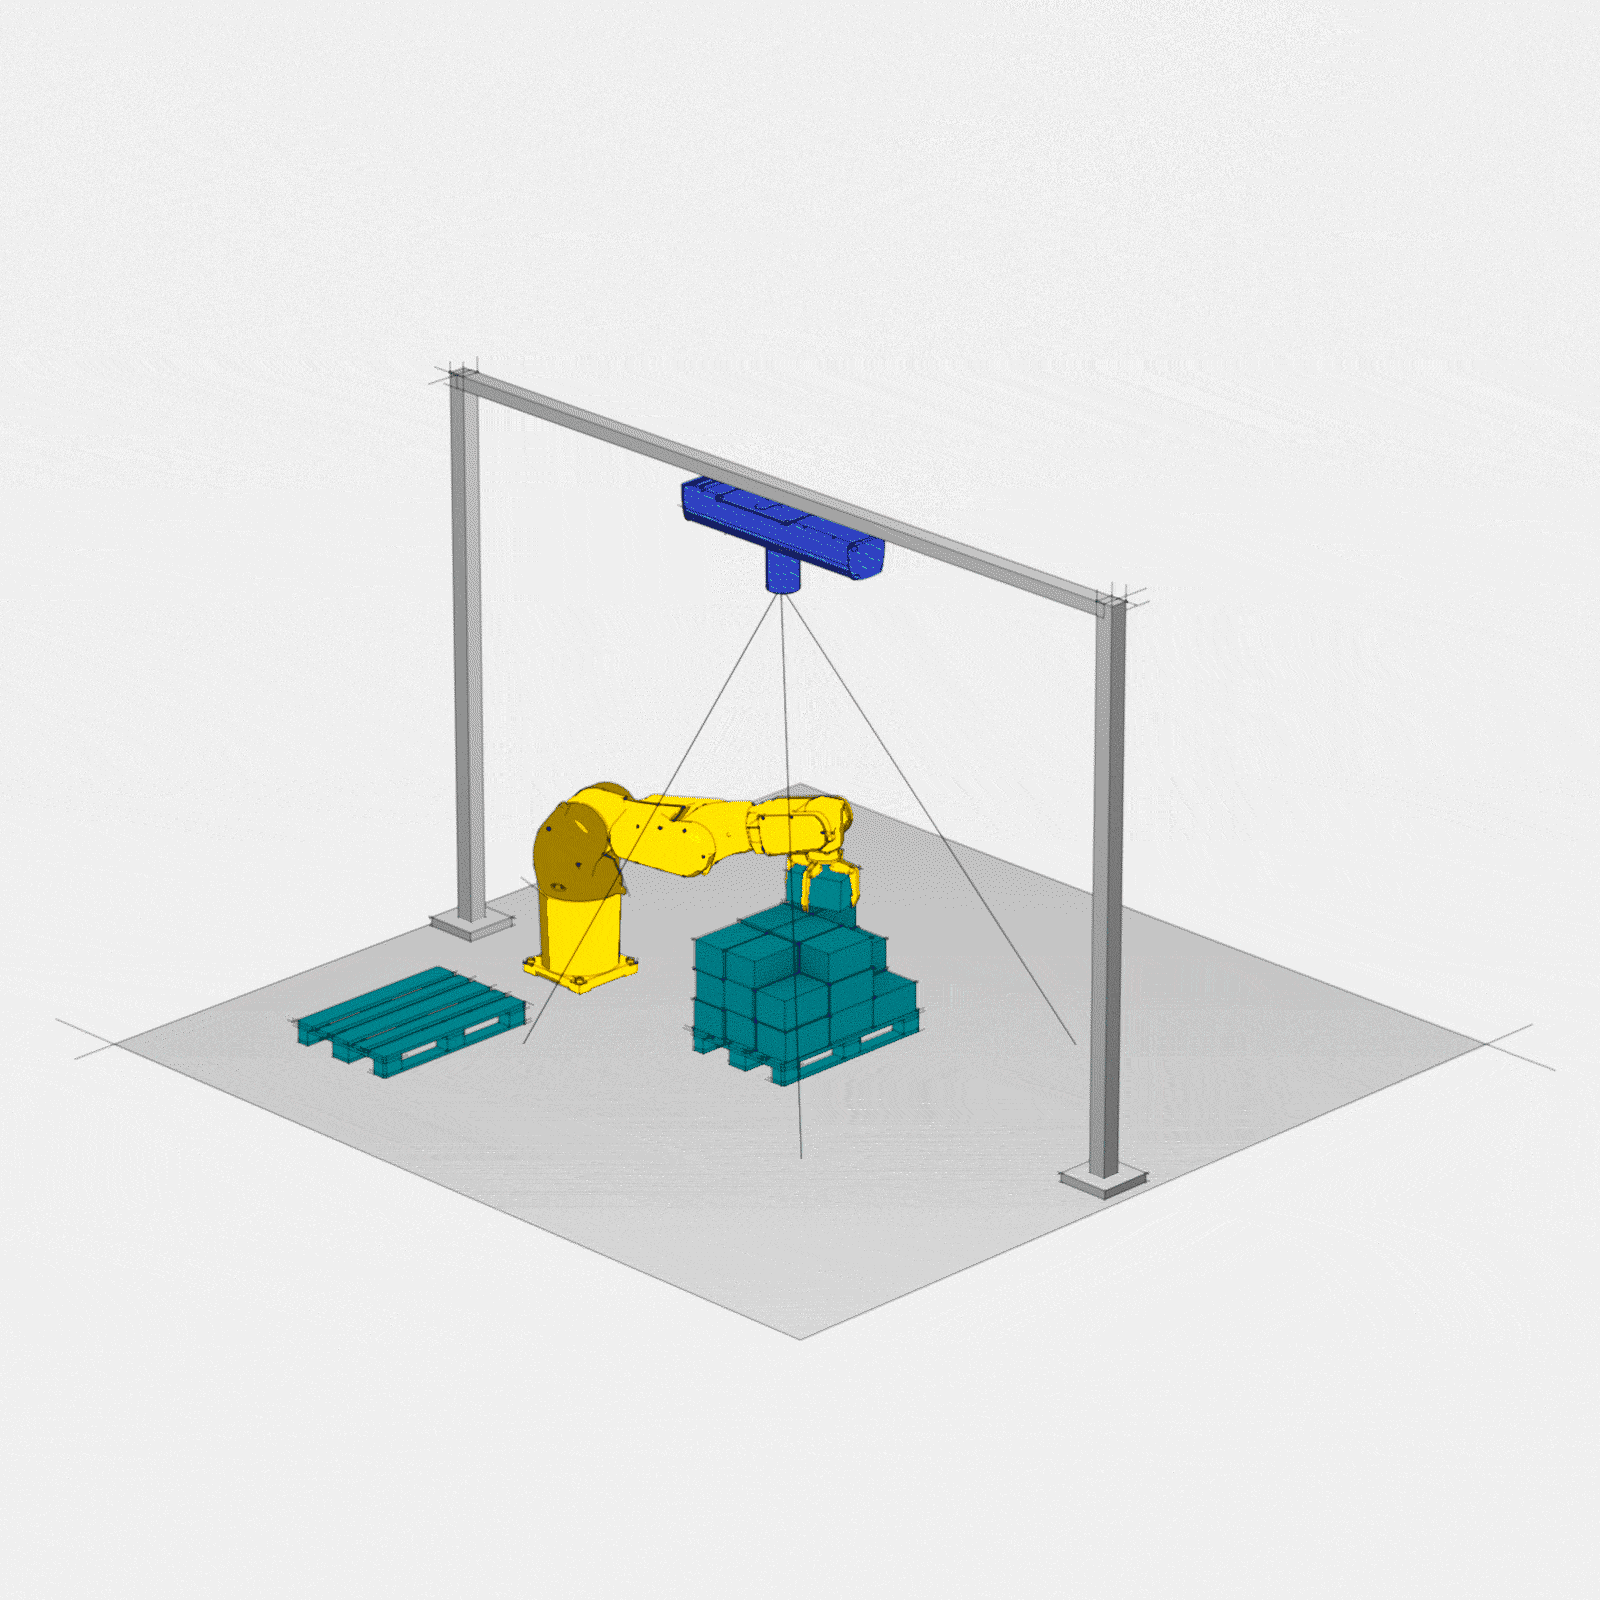 Animation montrant la caméra industrielle Ensenso C d’IDS identifiant la taille de l'objet, sa rotation et sa position réelle